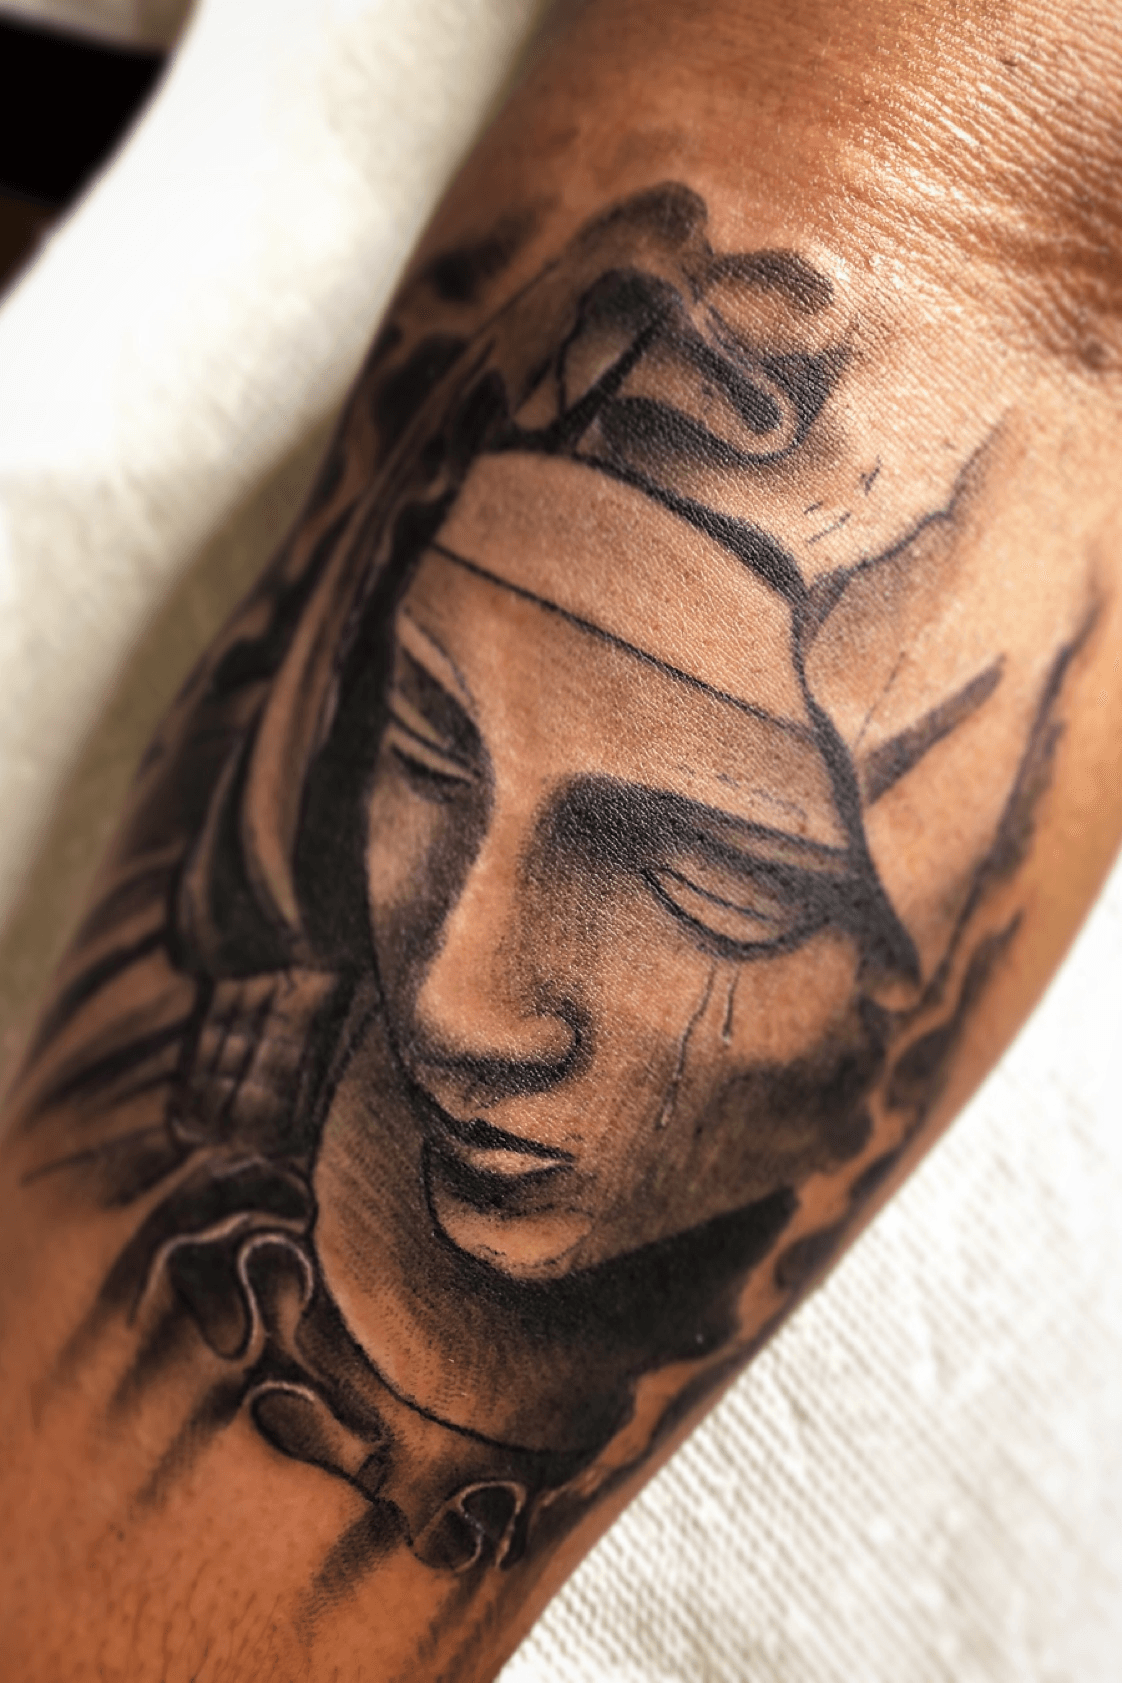 virgin mary face tattoo designs